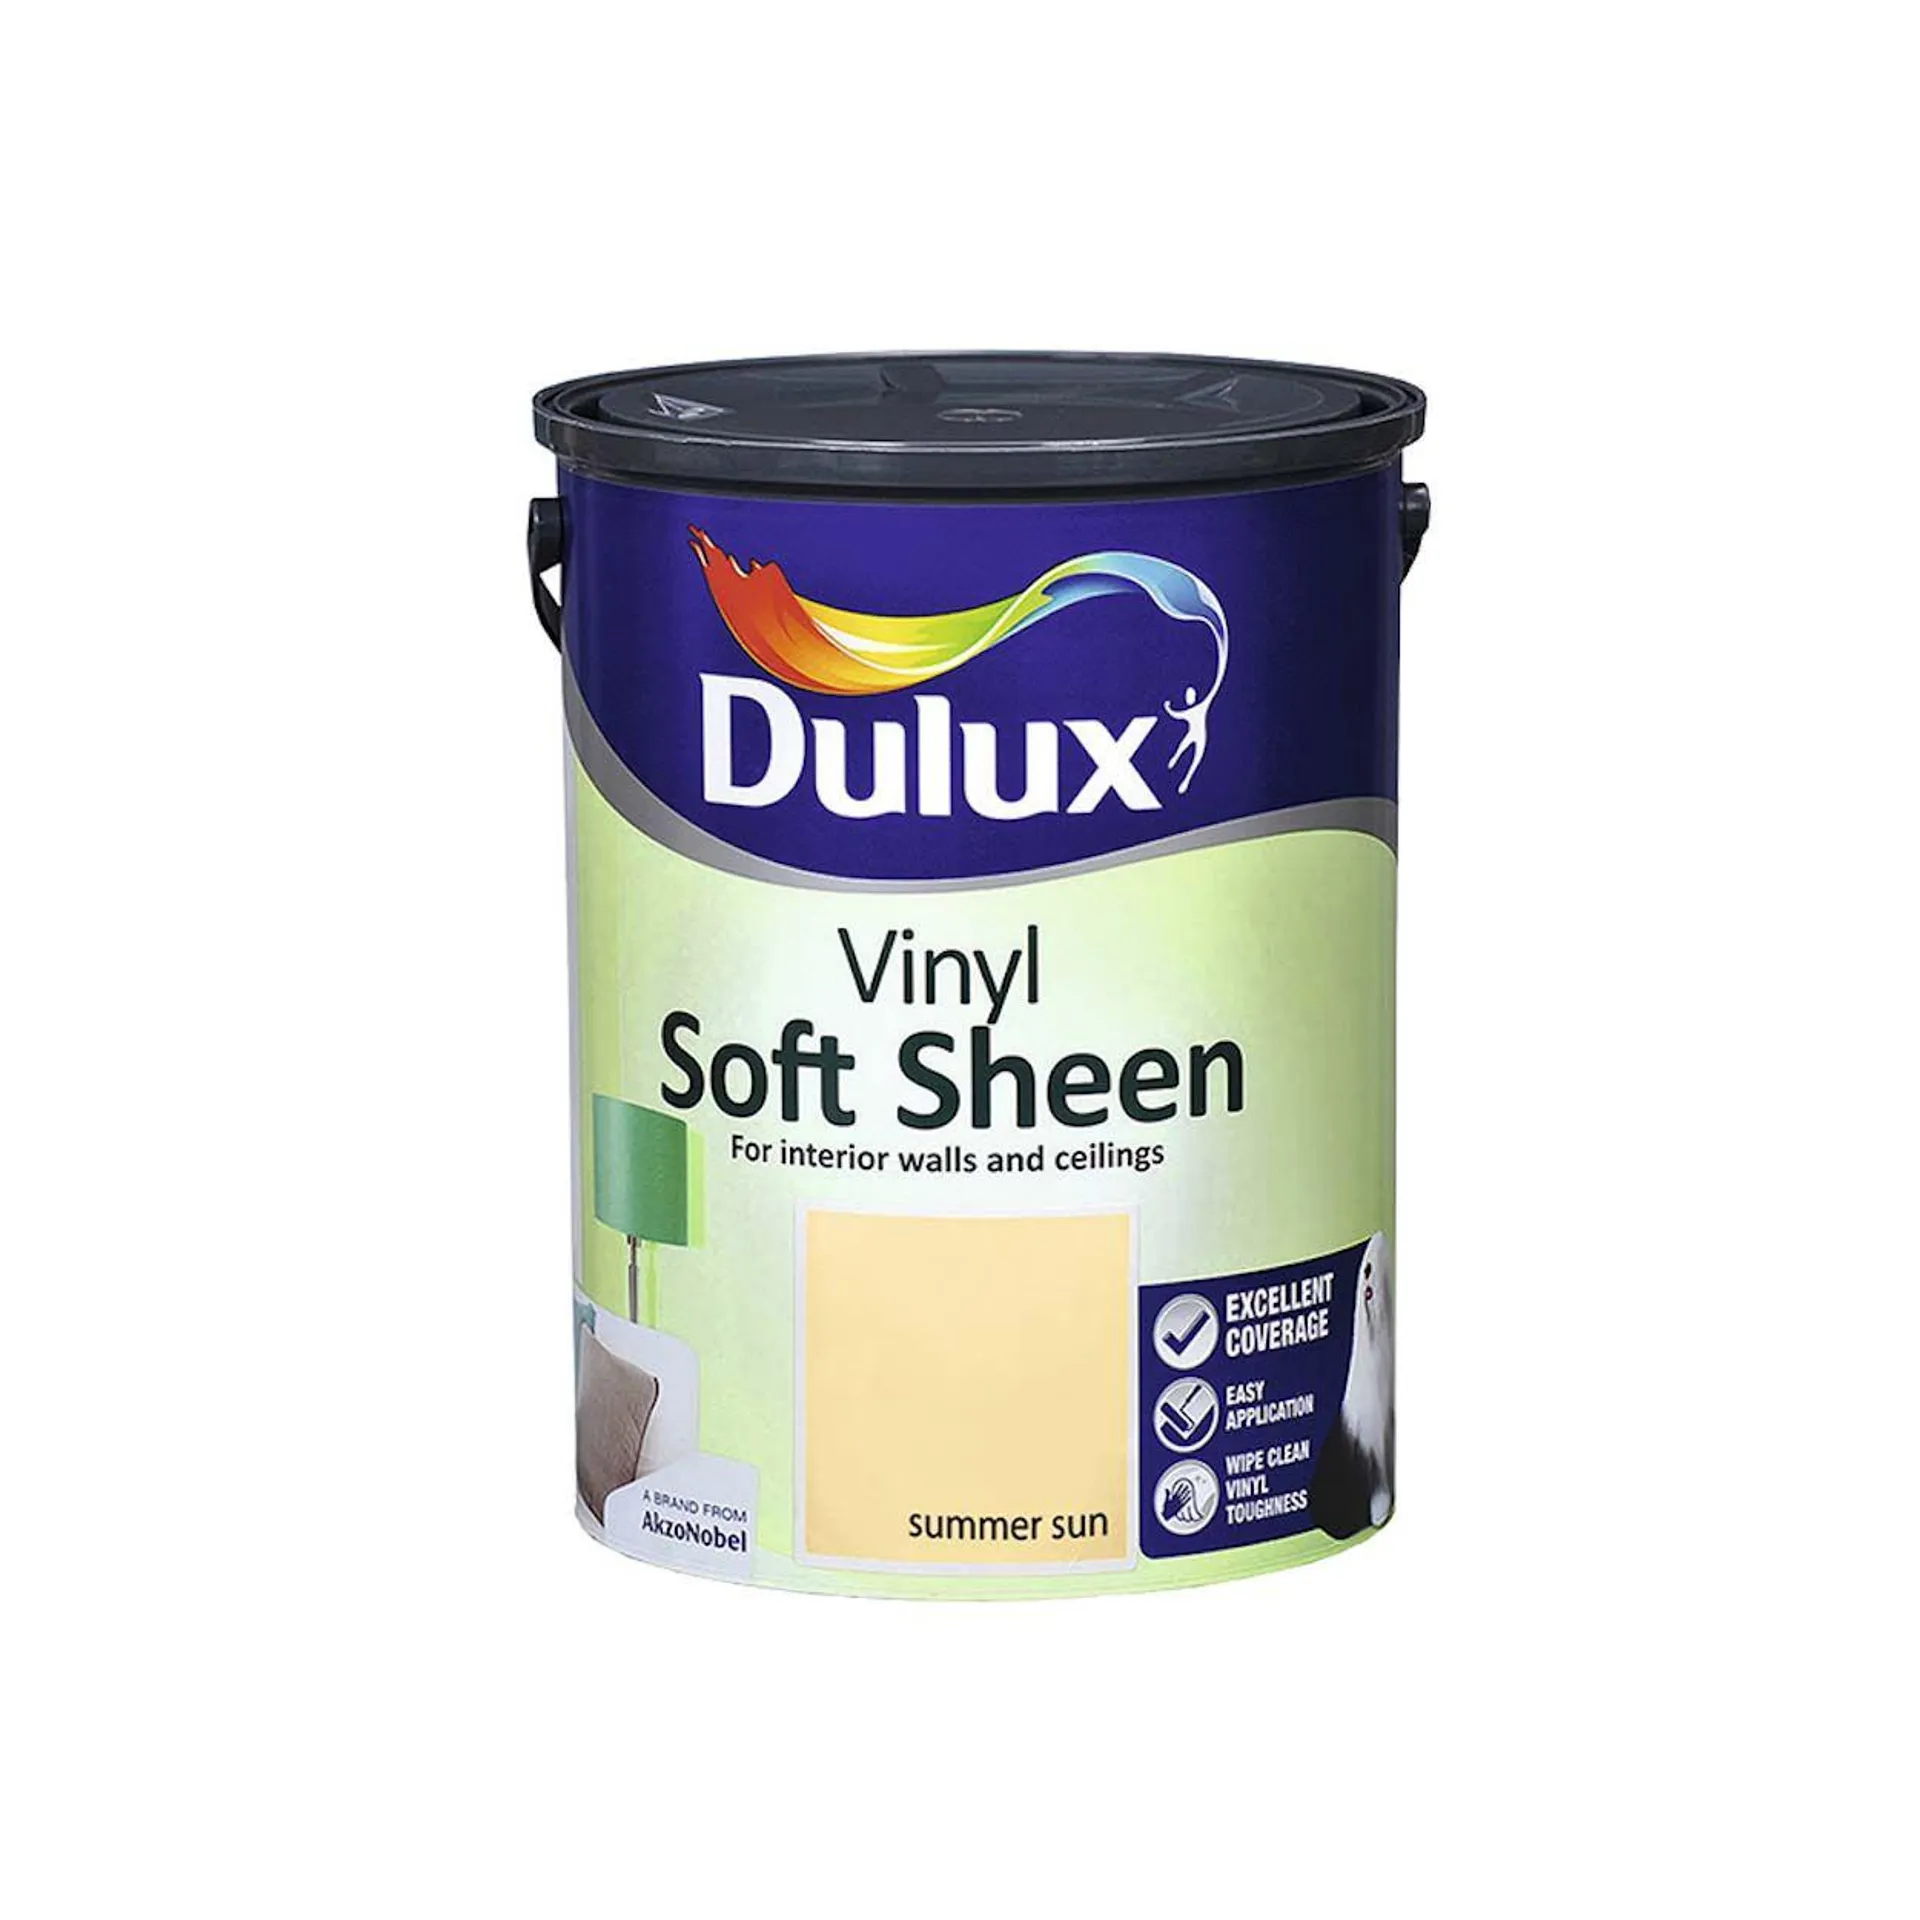 Dulux Vinyl Soft Sheen Summer Sun 5L